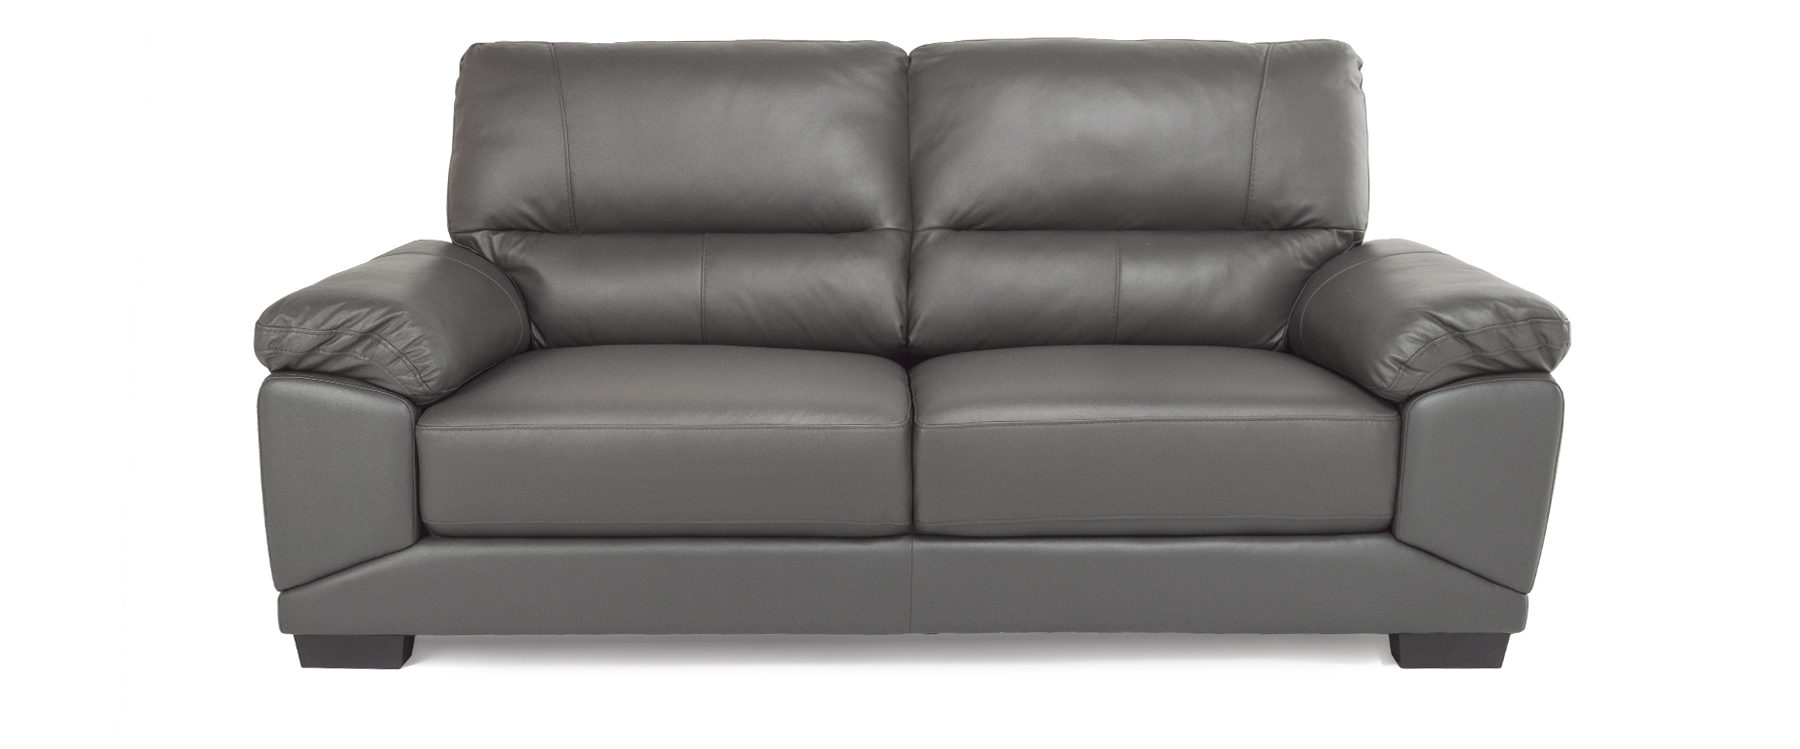 Daytona Grey Leather 3 Seater Sofa